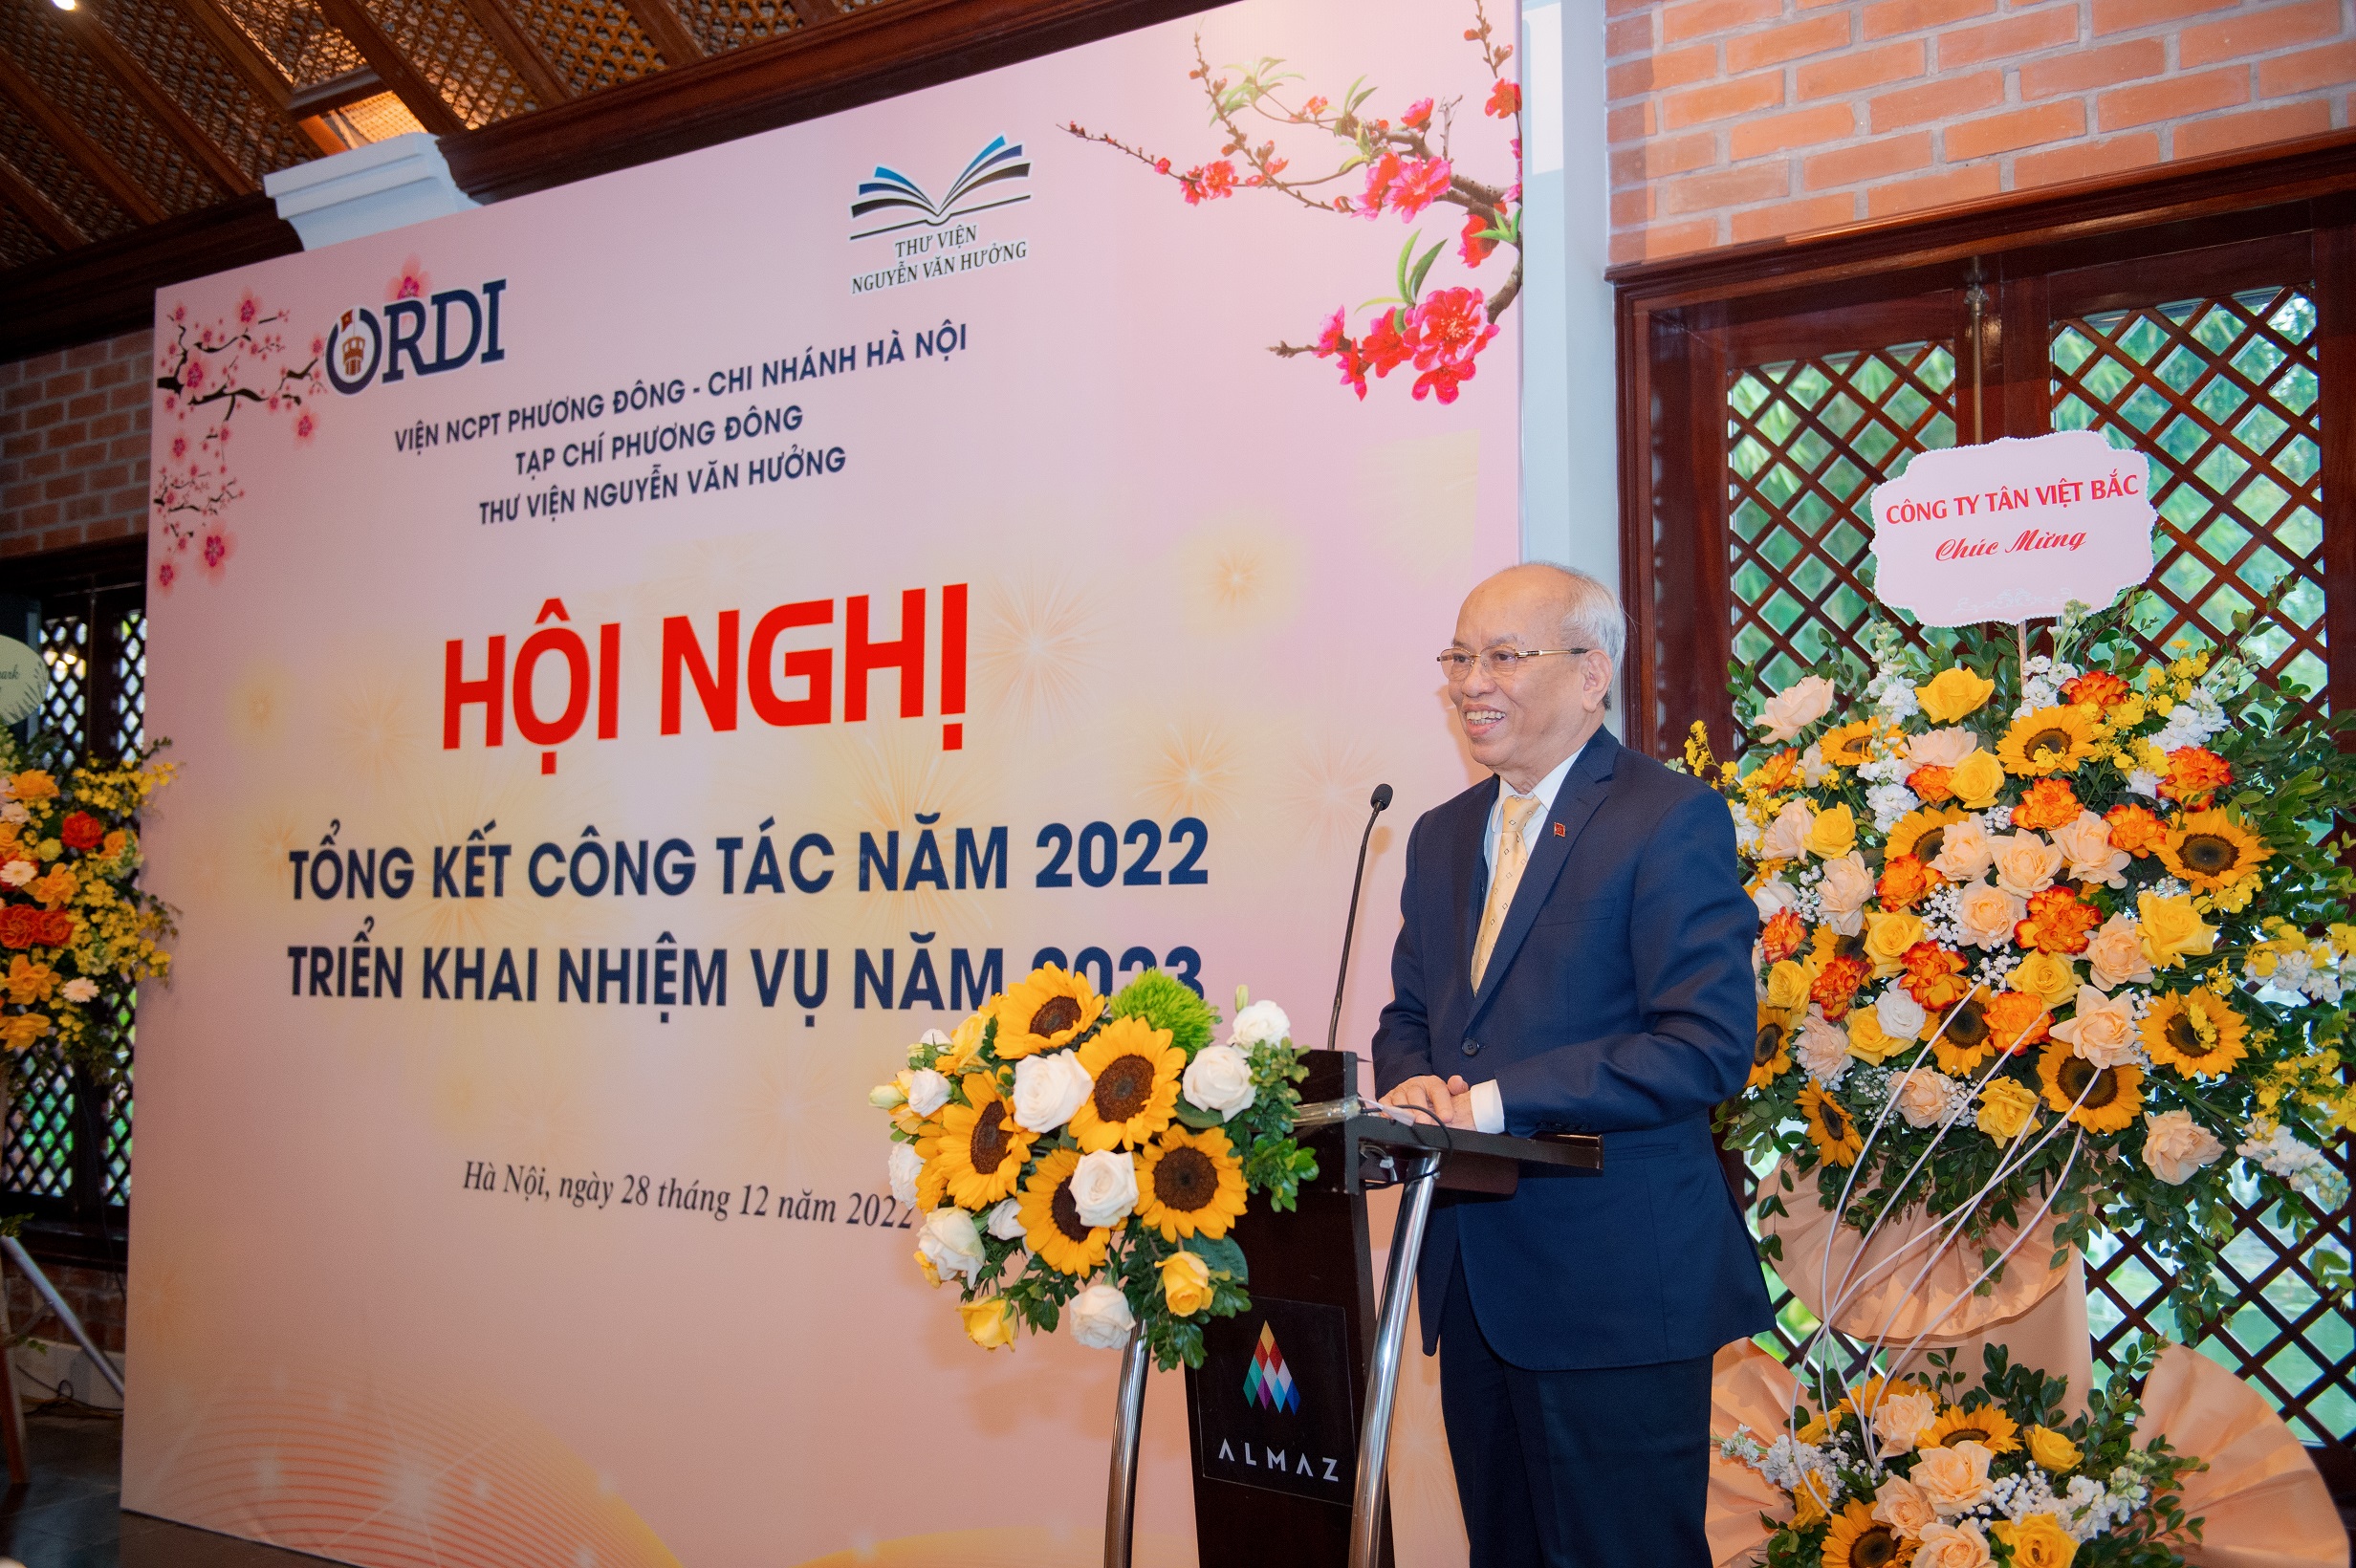 Viện Nghiên cứu Phát triển Phương Đông – Chi nhánh Hà Nội, Tạp chí Phương Đông và Thư viện Nguyễn Văn Hưởng tổng kết hoạt động năm 2022